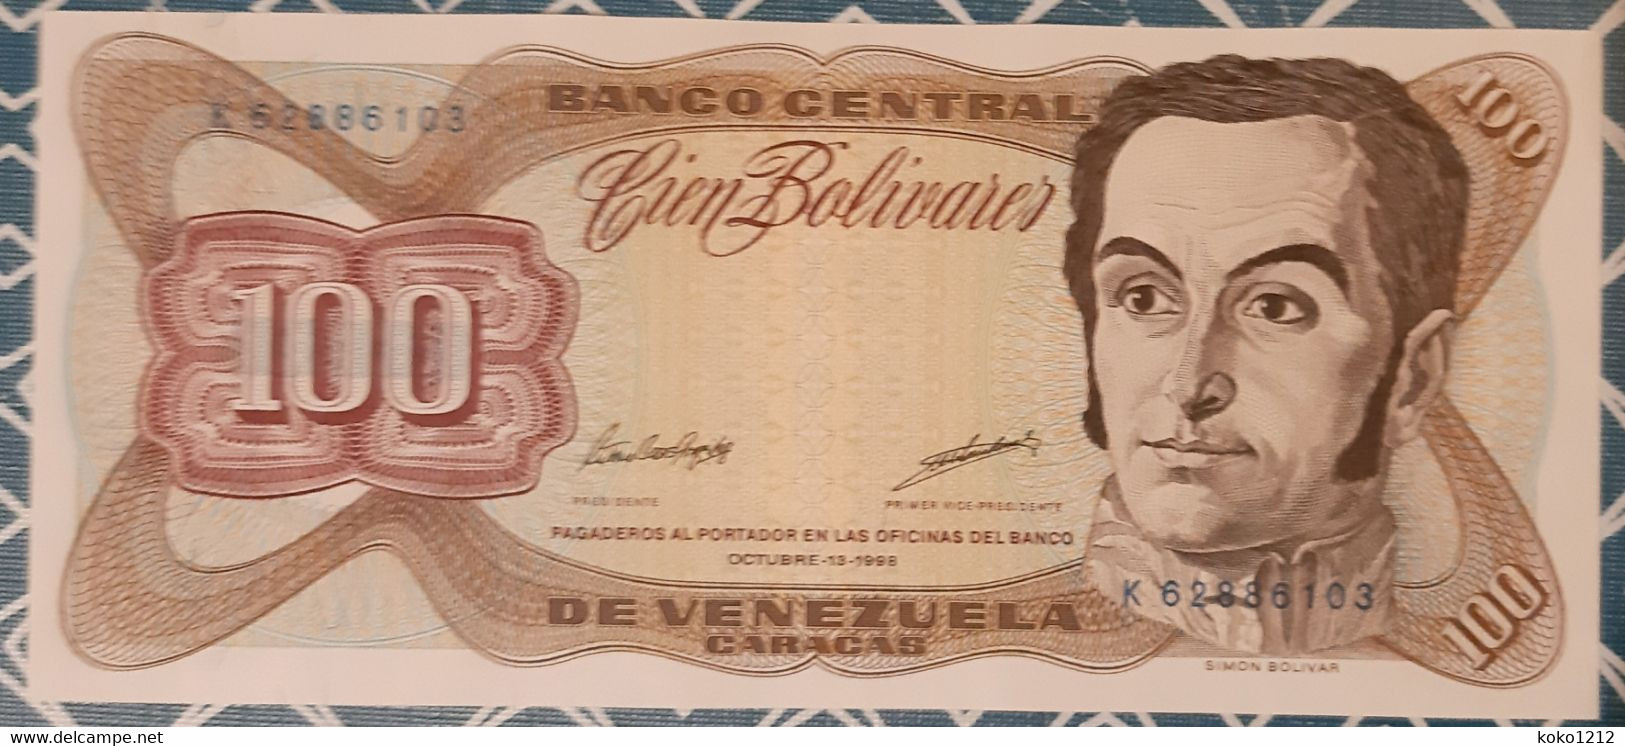 Venezuela 100 Bolivares 13/10/1998 UNC - Venezuela